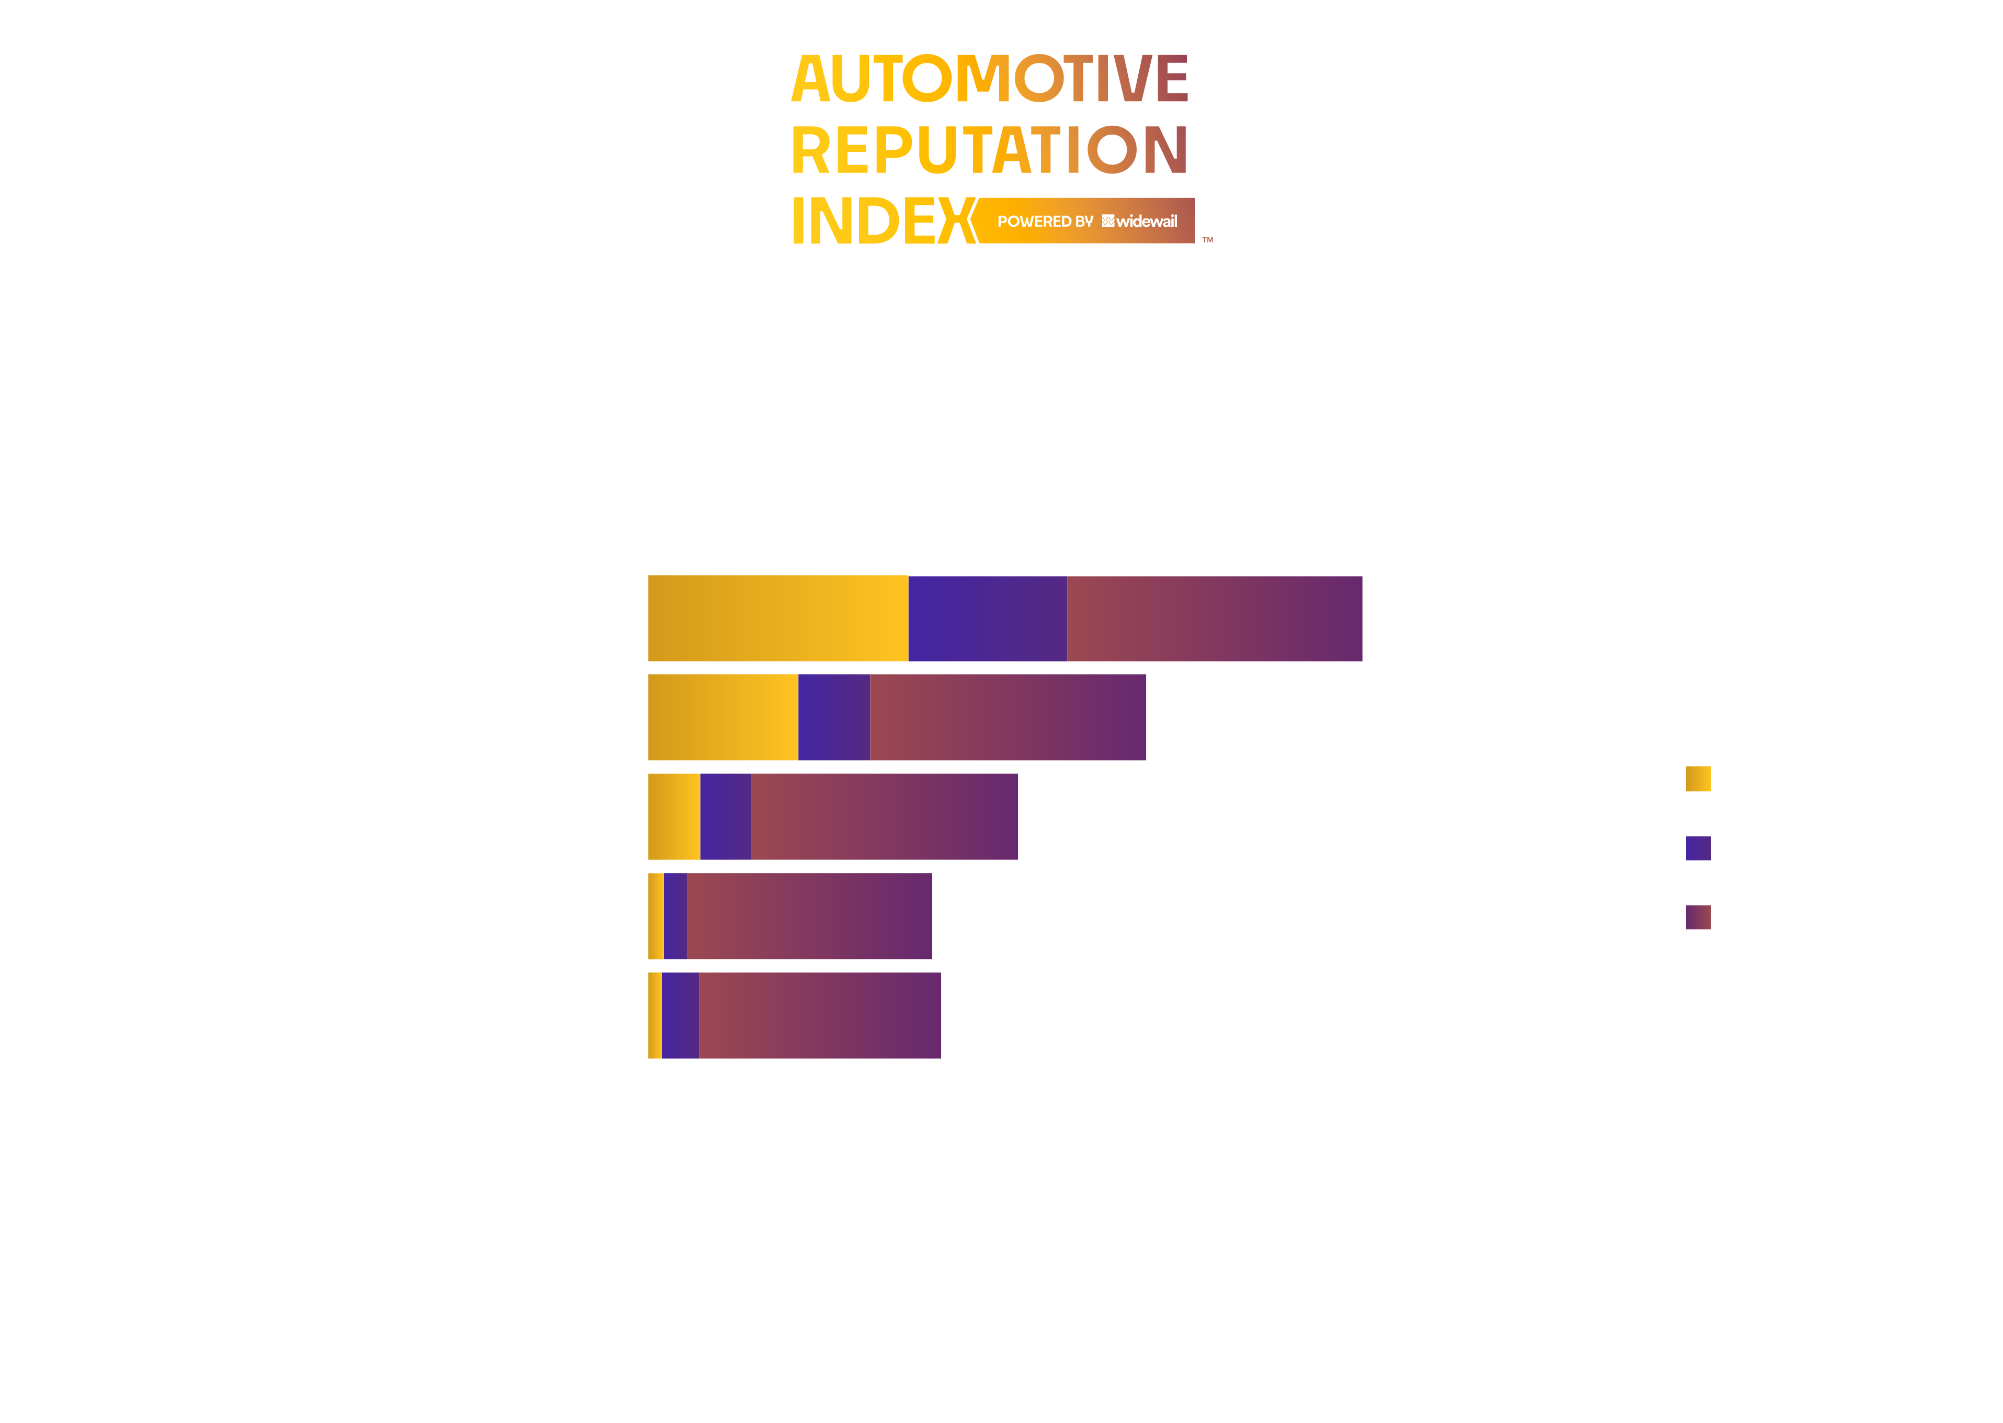 Top Luxury Dealers in Cincinnati